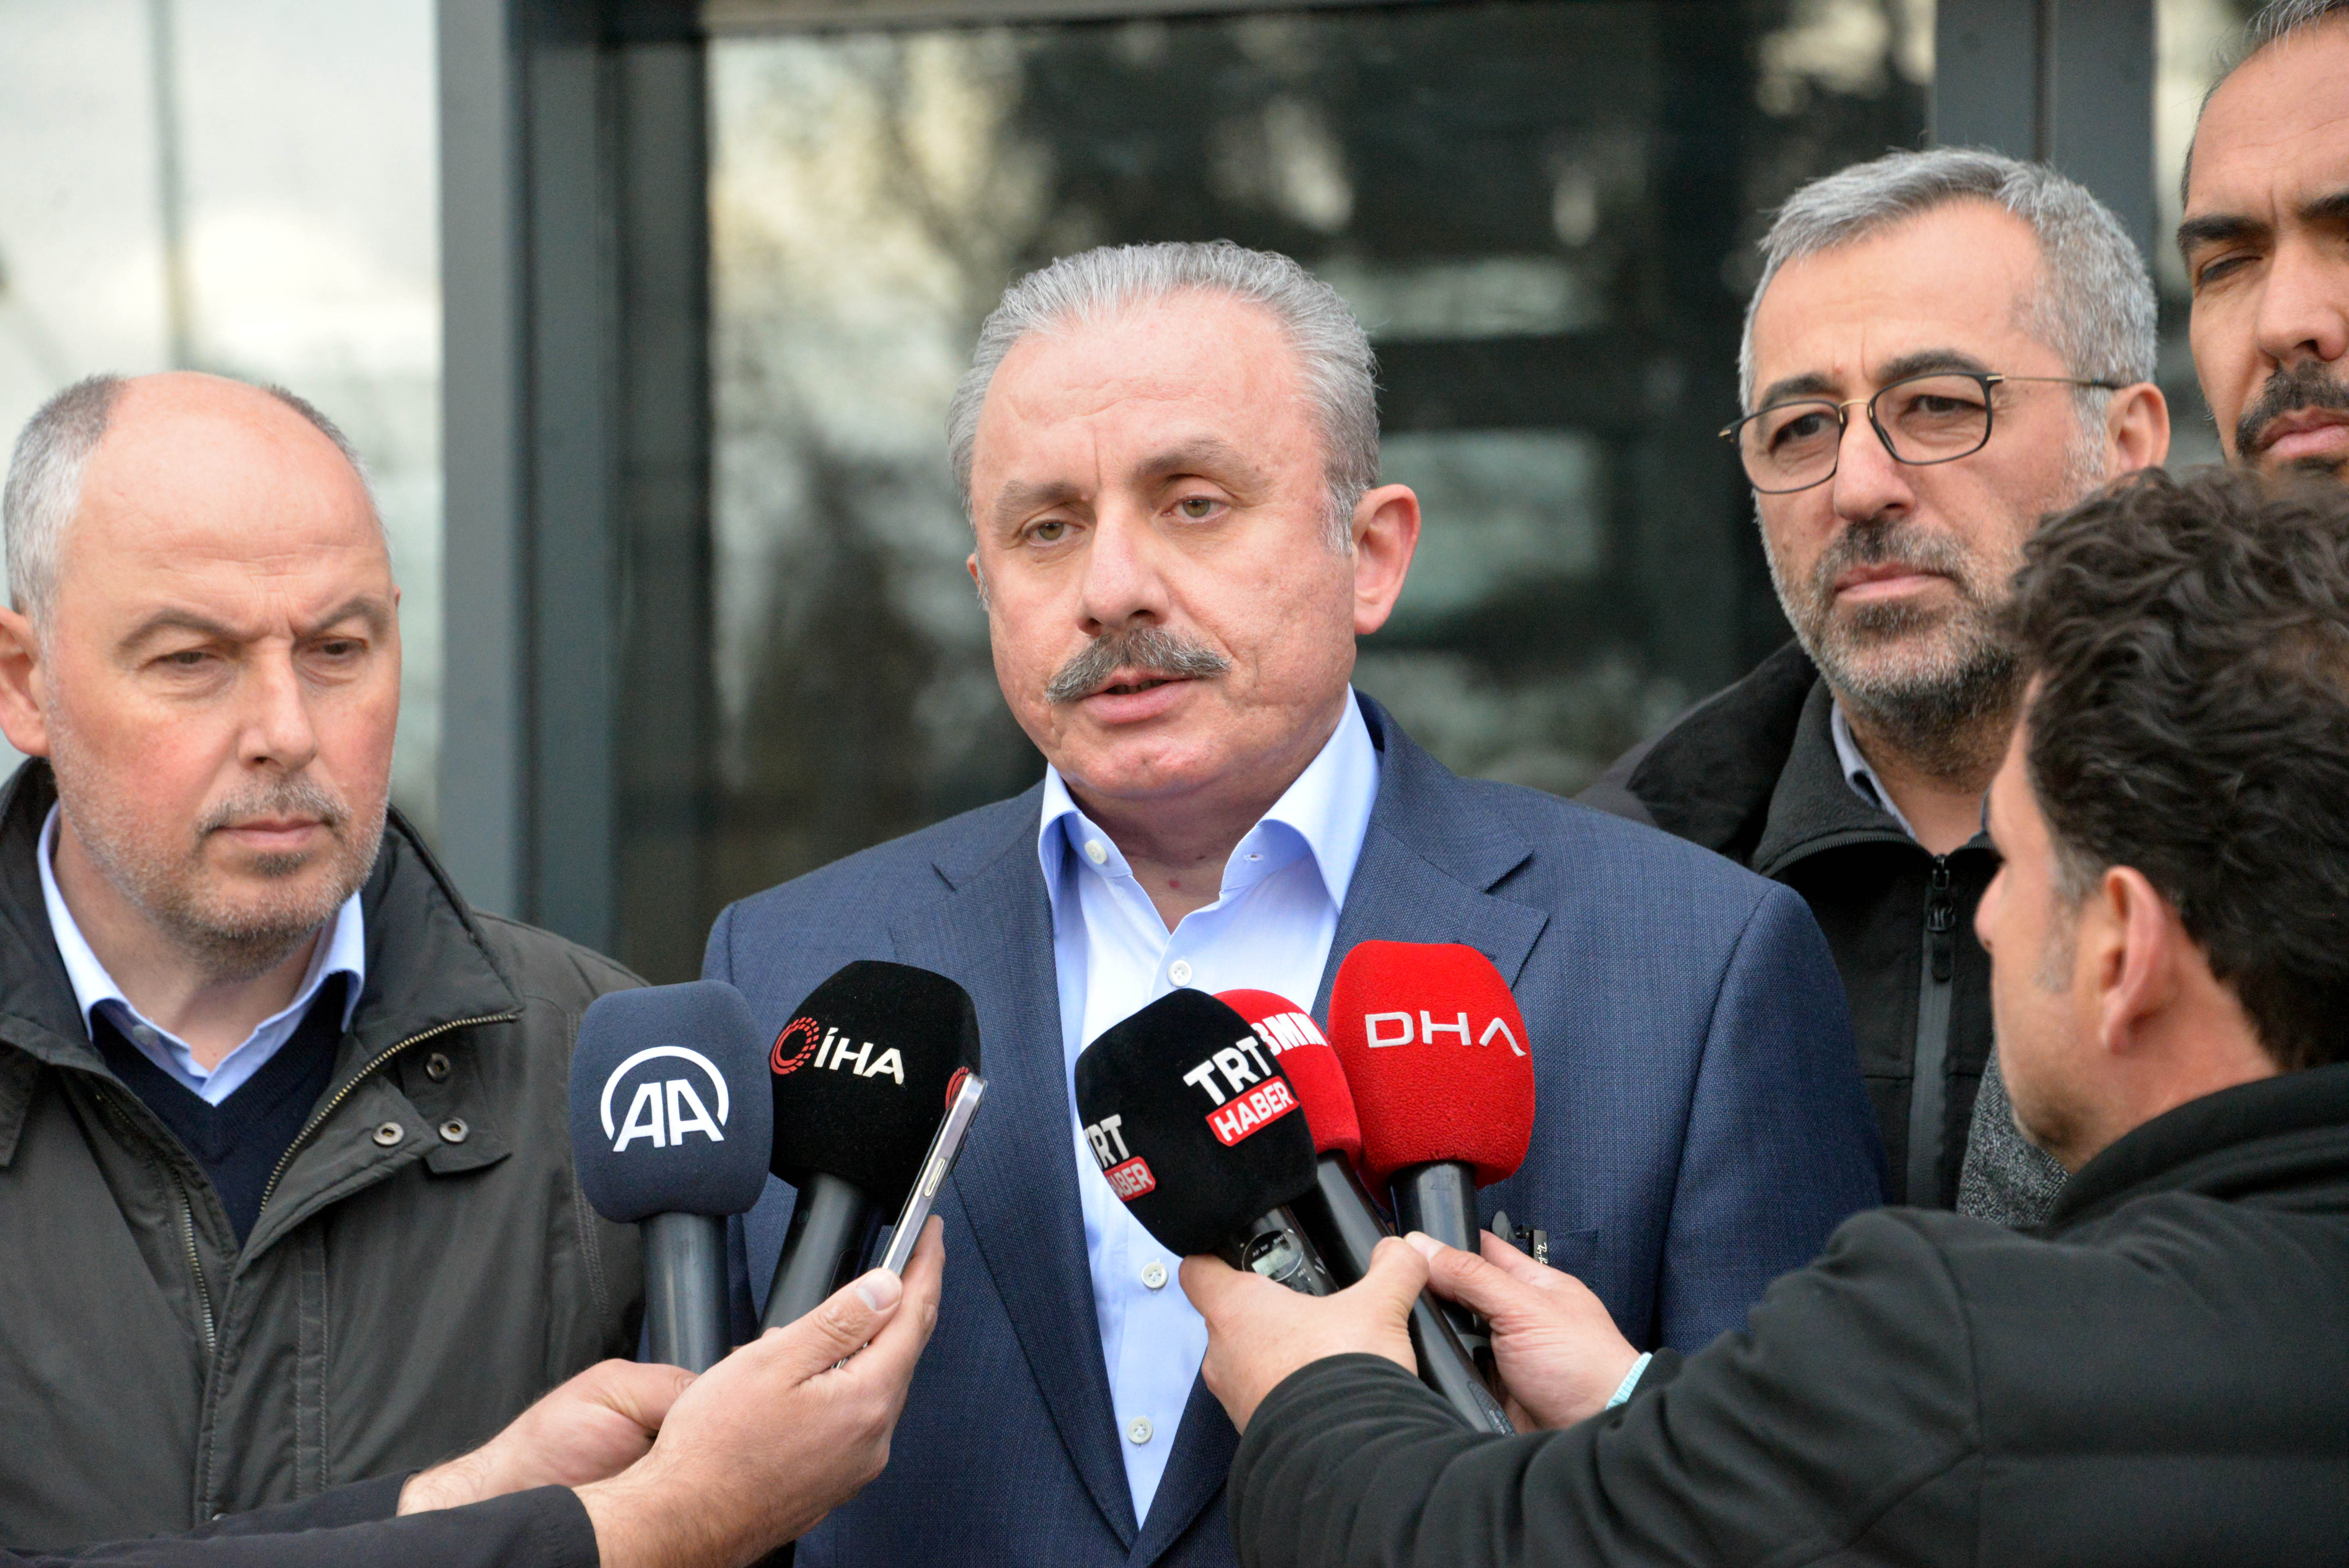 Meclis Başkanı Şentop'tan Kılıçdaroğlu'nun çağrısına yanıt: İyi niyetli gibi gözüküyor olsa da provakatif